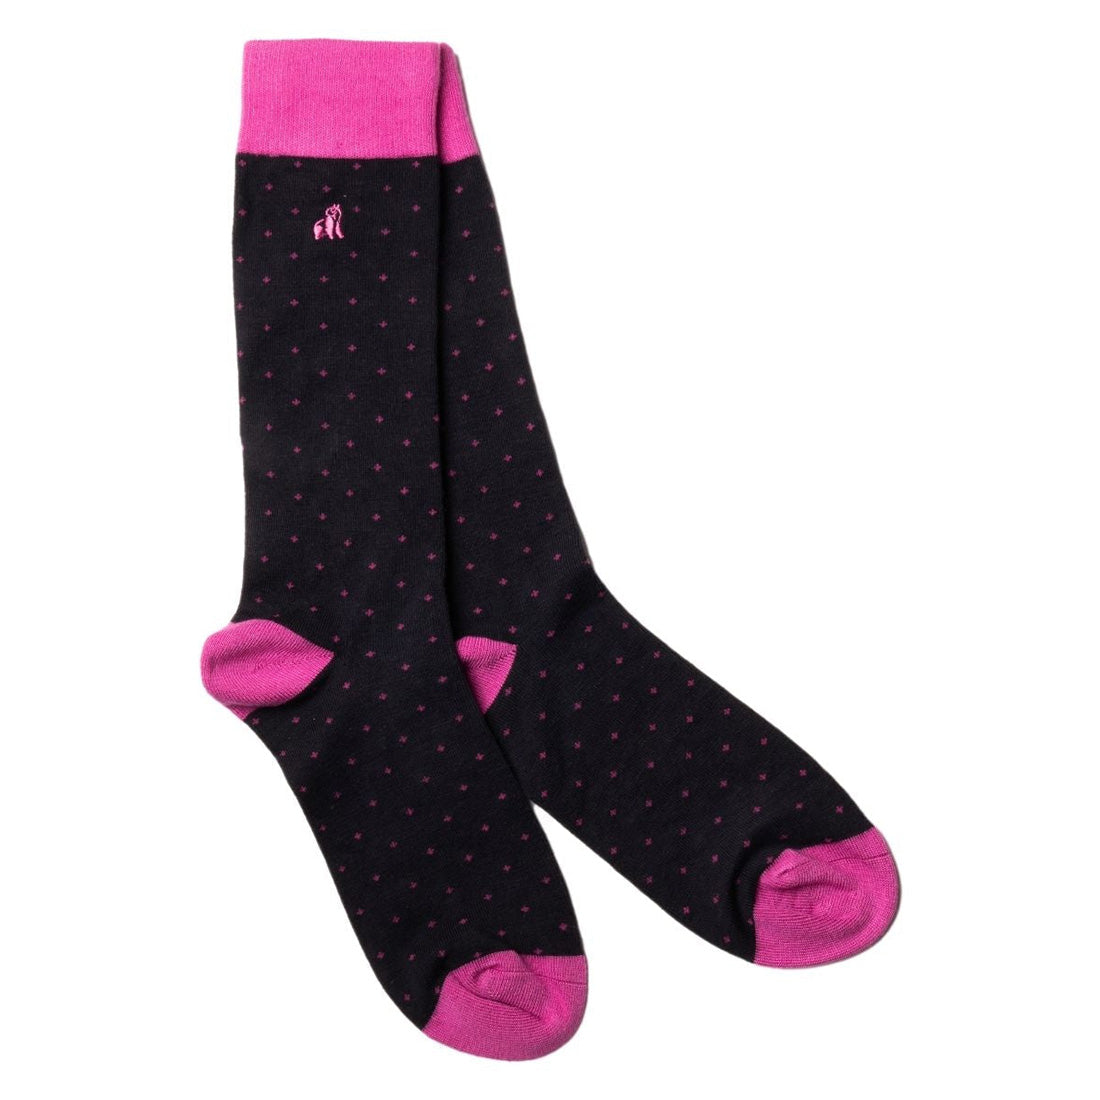 socks-spotted-pink-bamboo-socks-1_51405607-c00d-48f7-b41d-8060d5a008ce.jpg